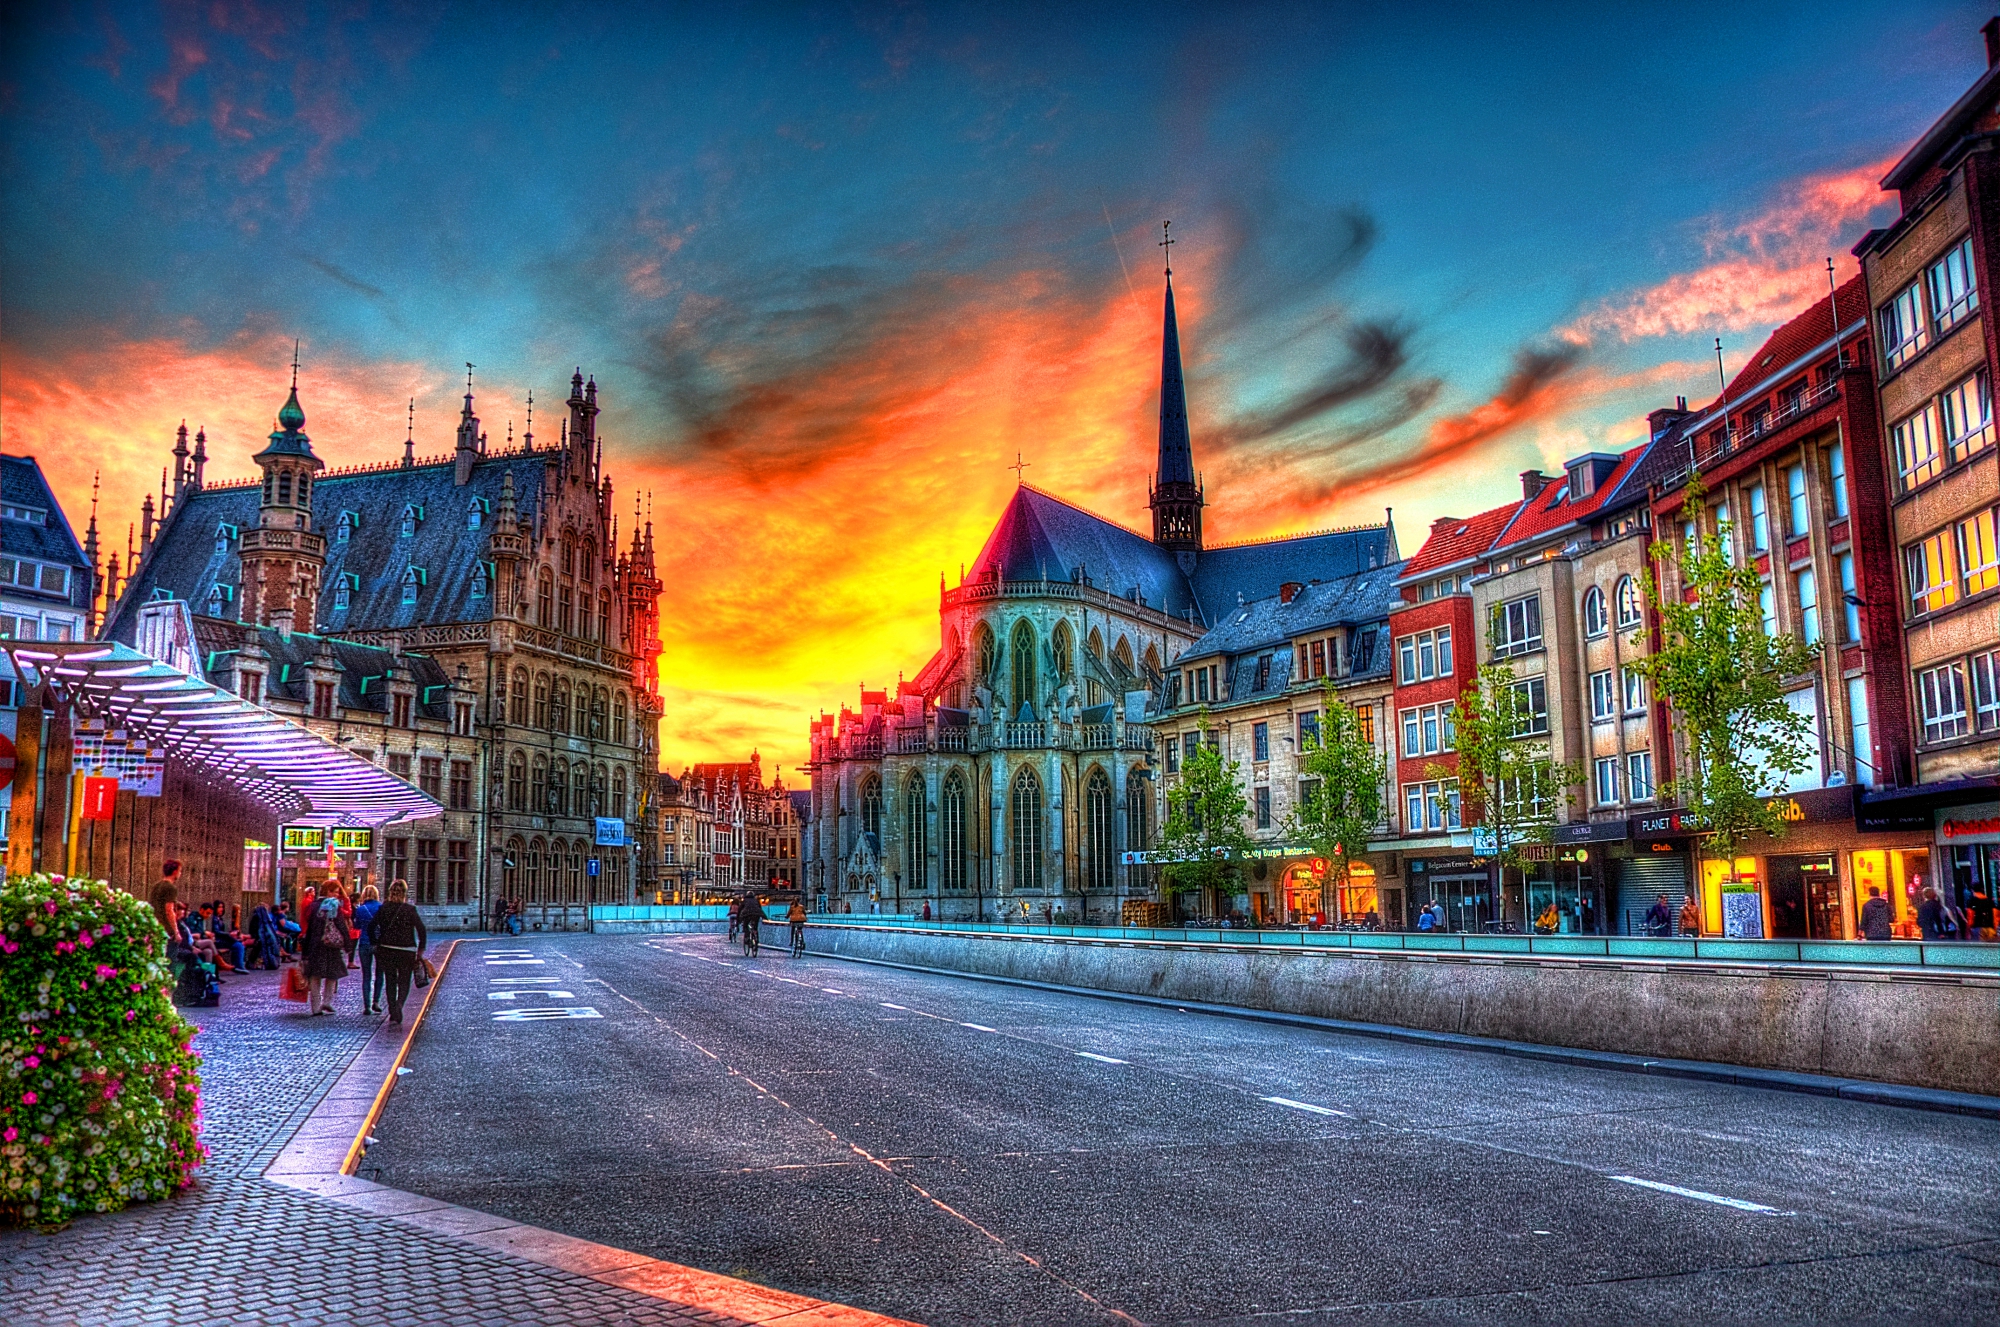 Leuven Sunset - Photography by Arty Caiado